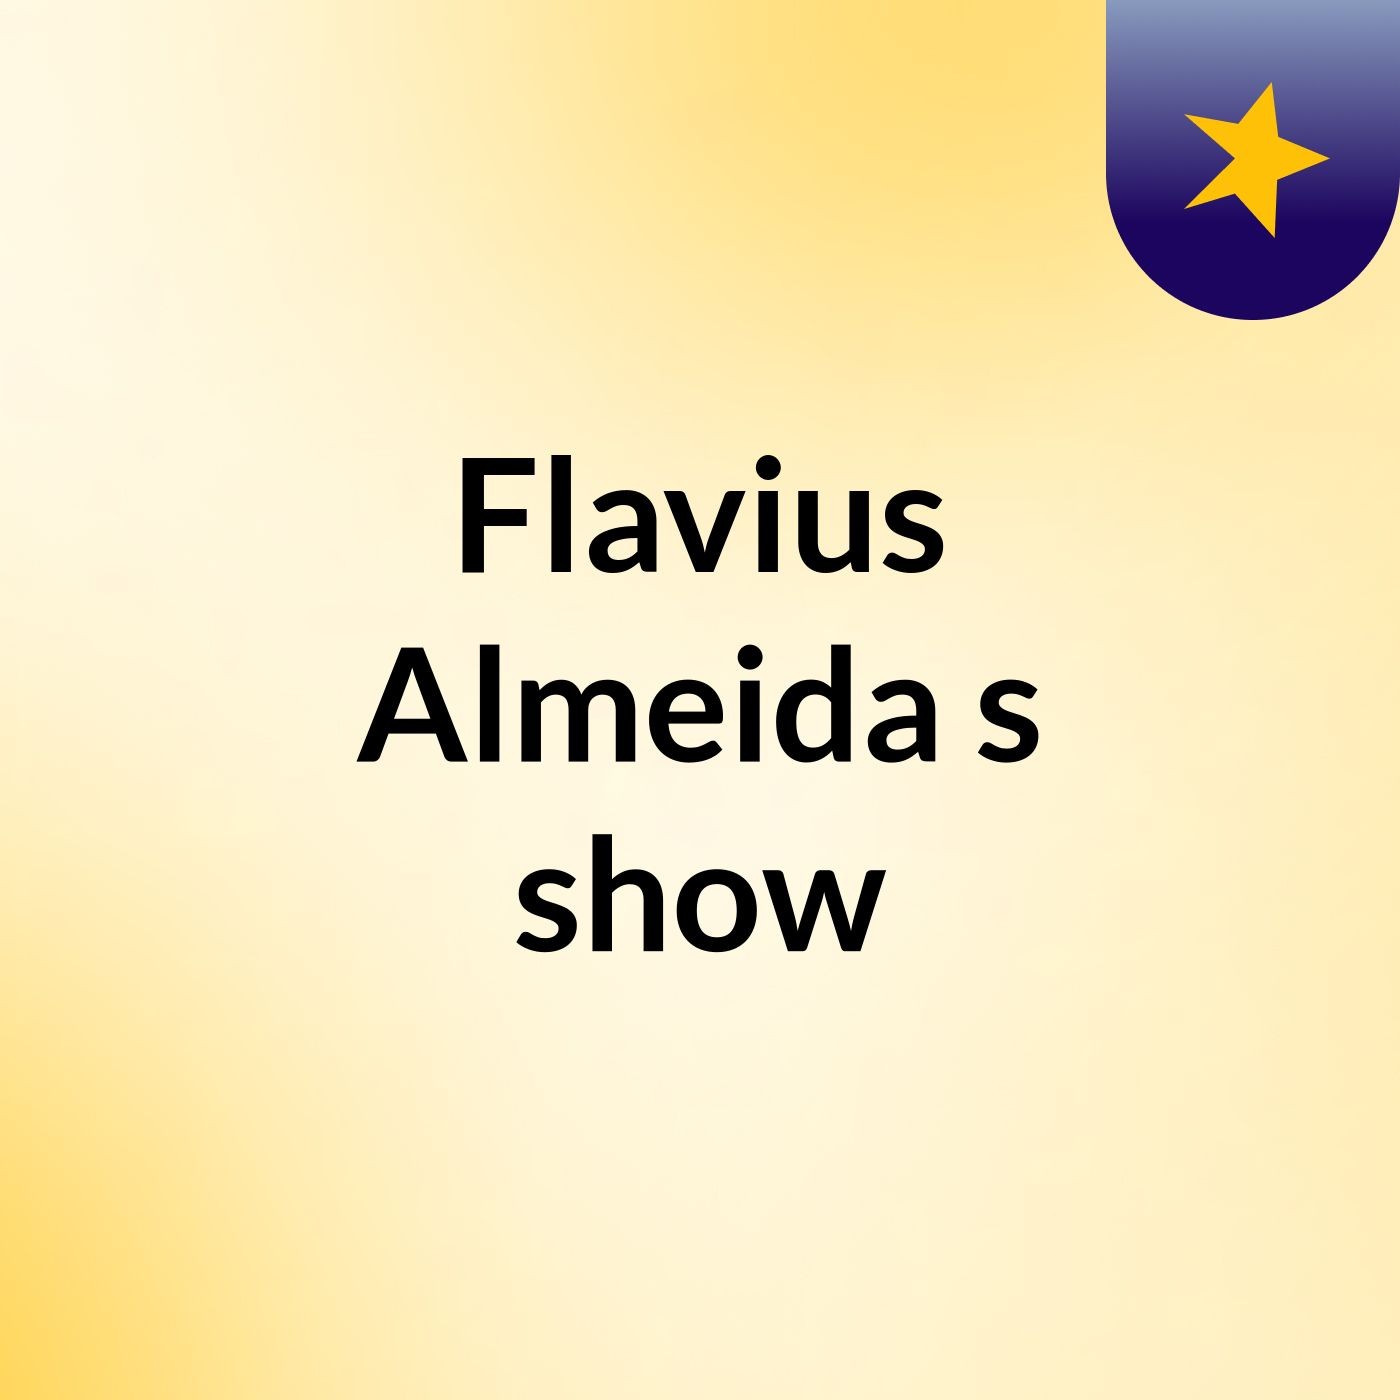 Flavius Almeida's show